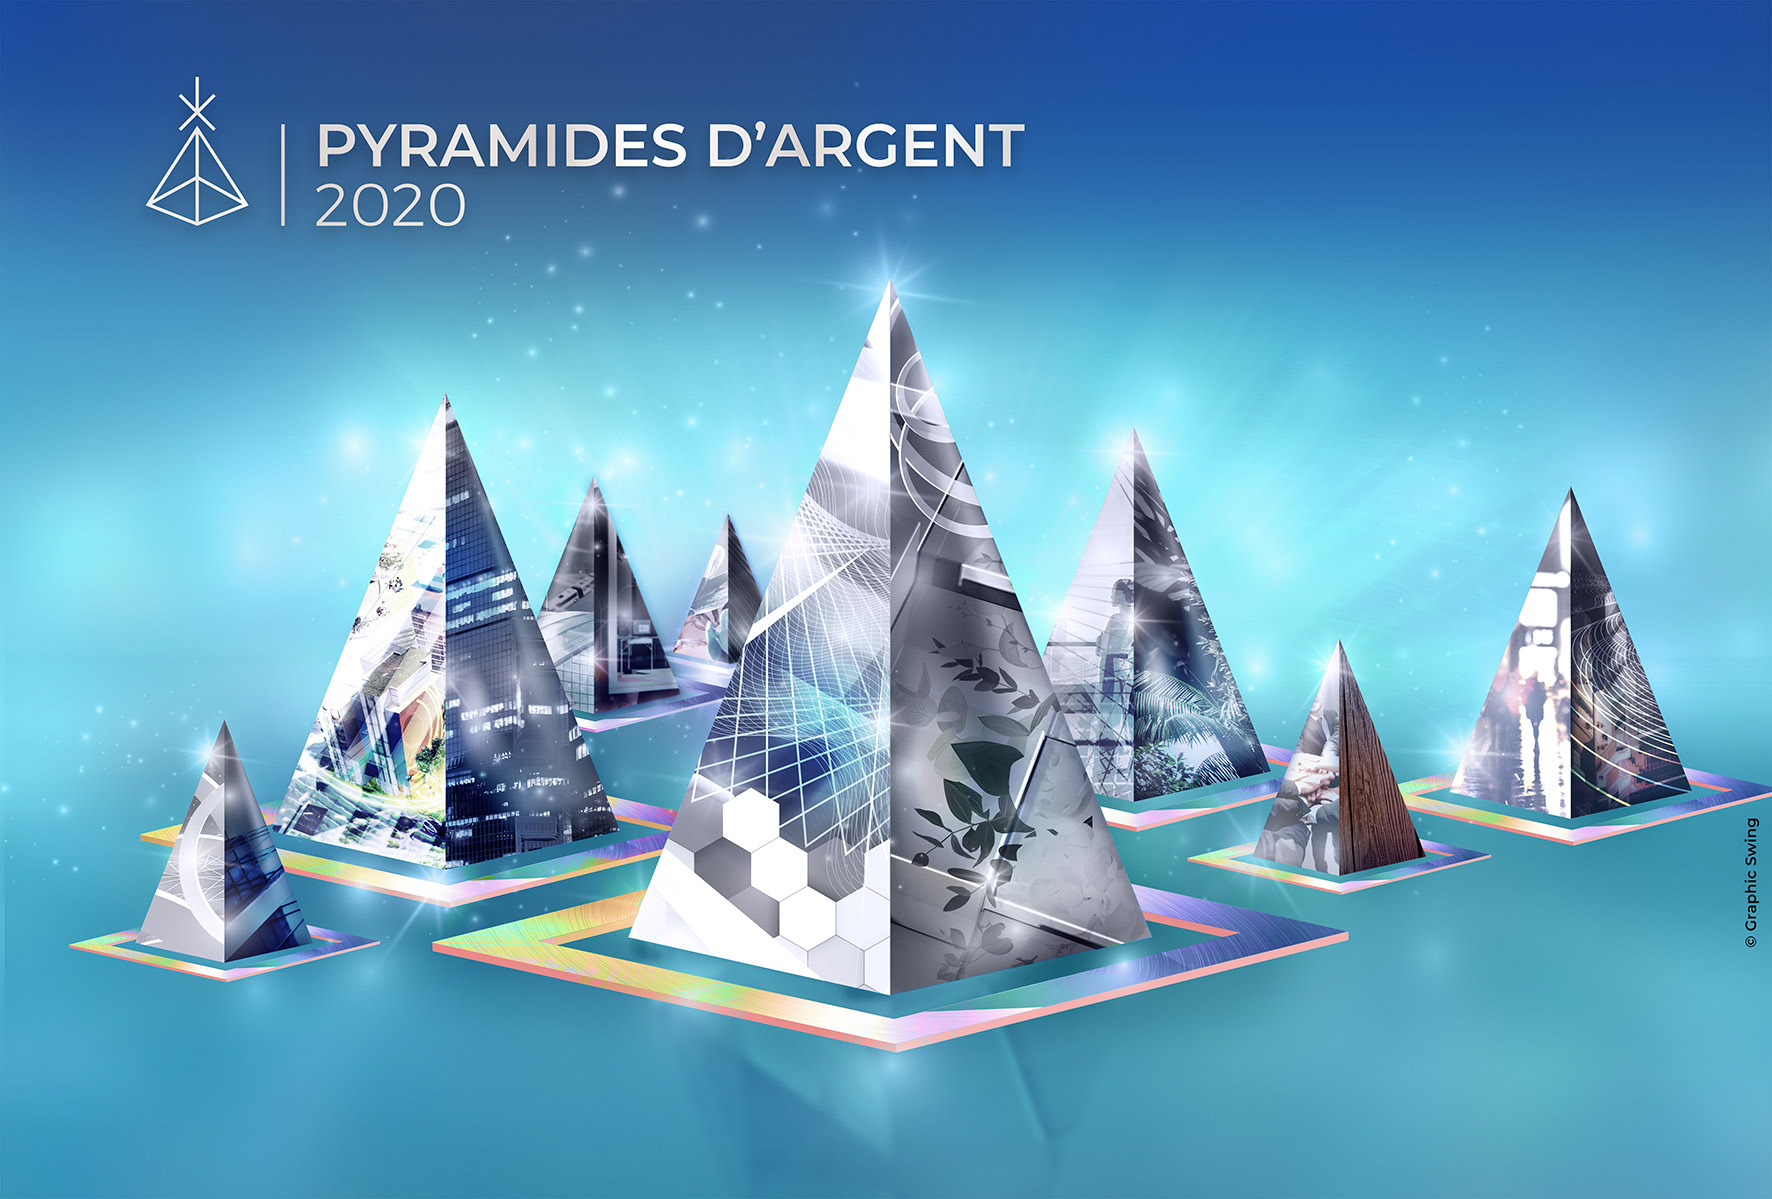 fidexi-nue-propriete-Pyramides-argent-2020-rennes-plaisance